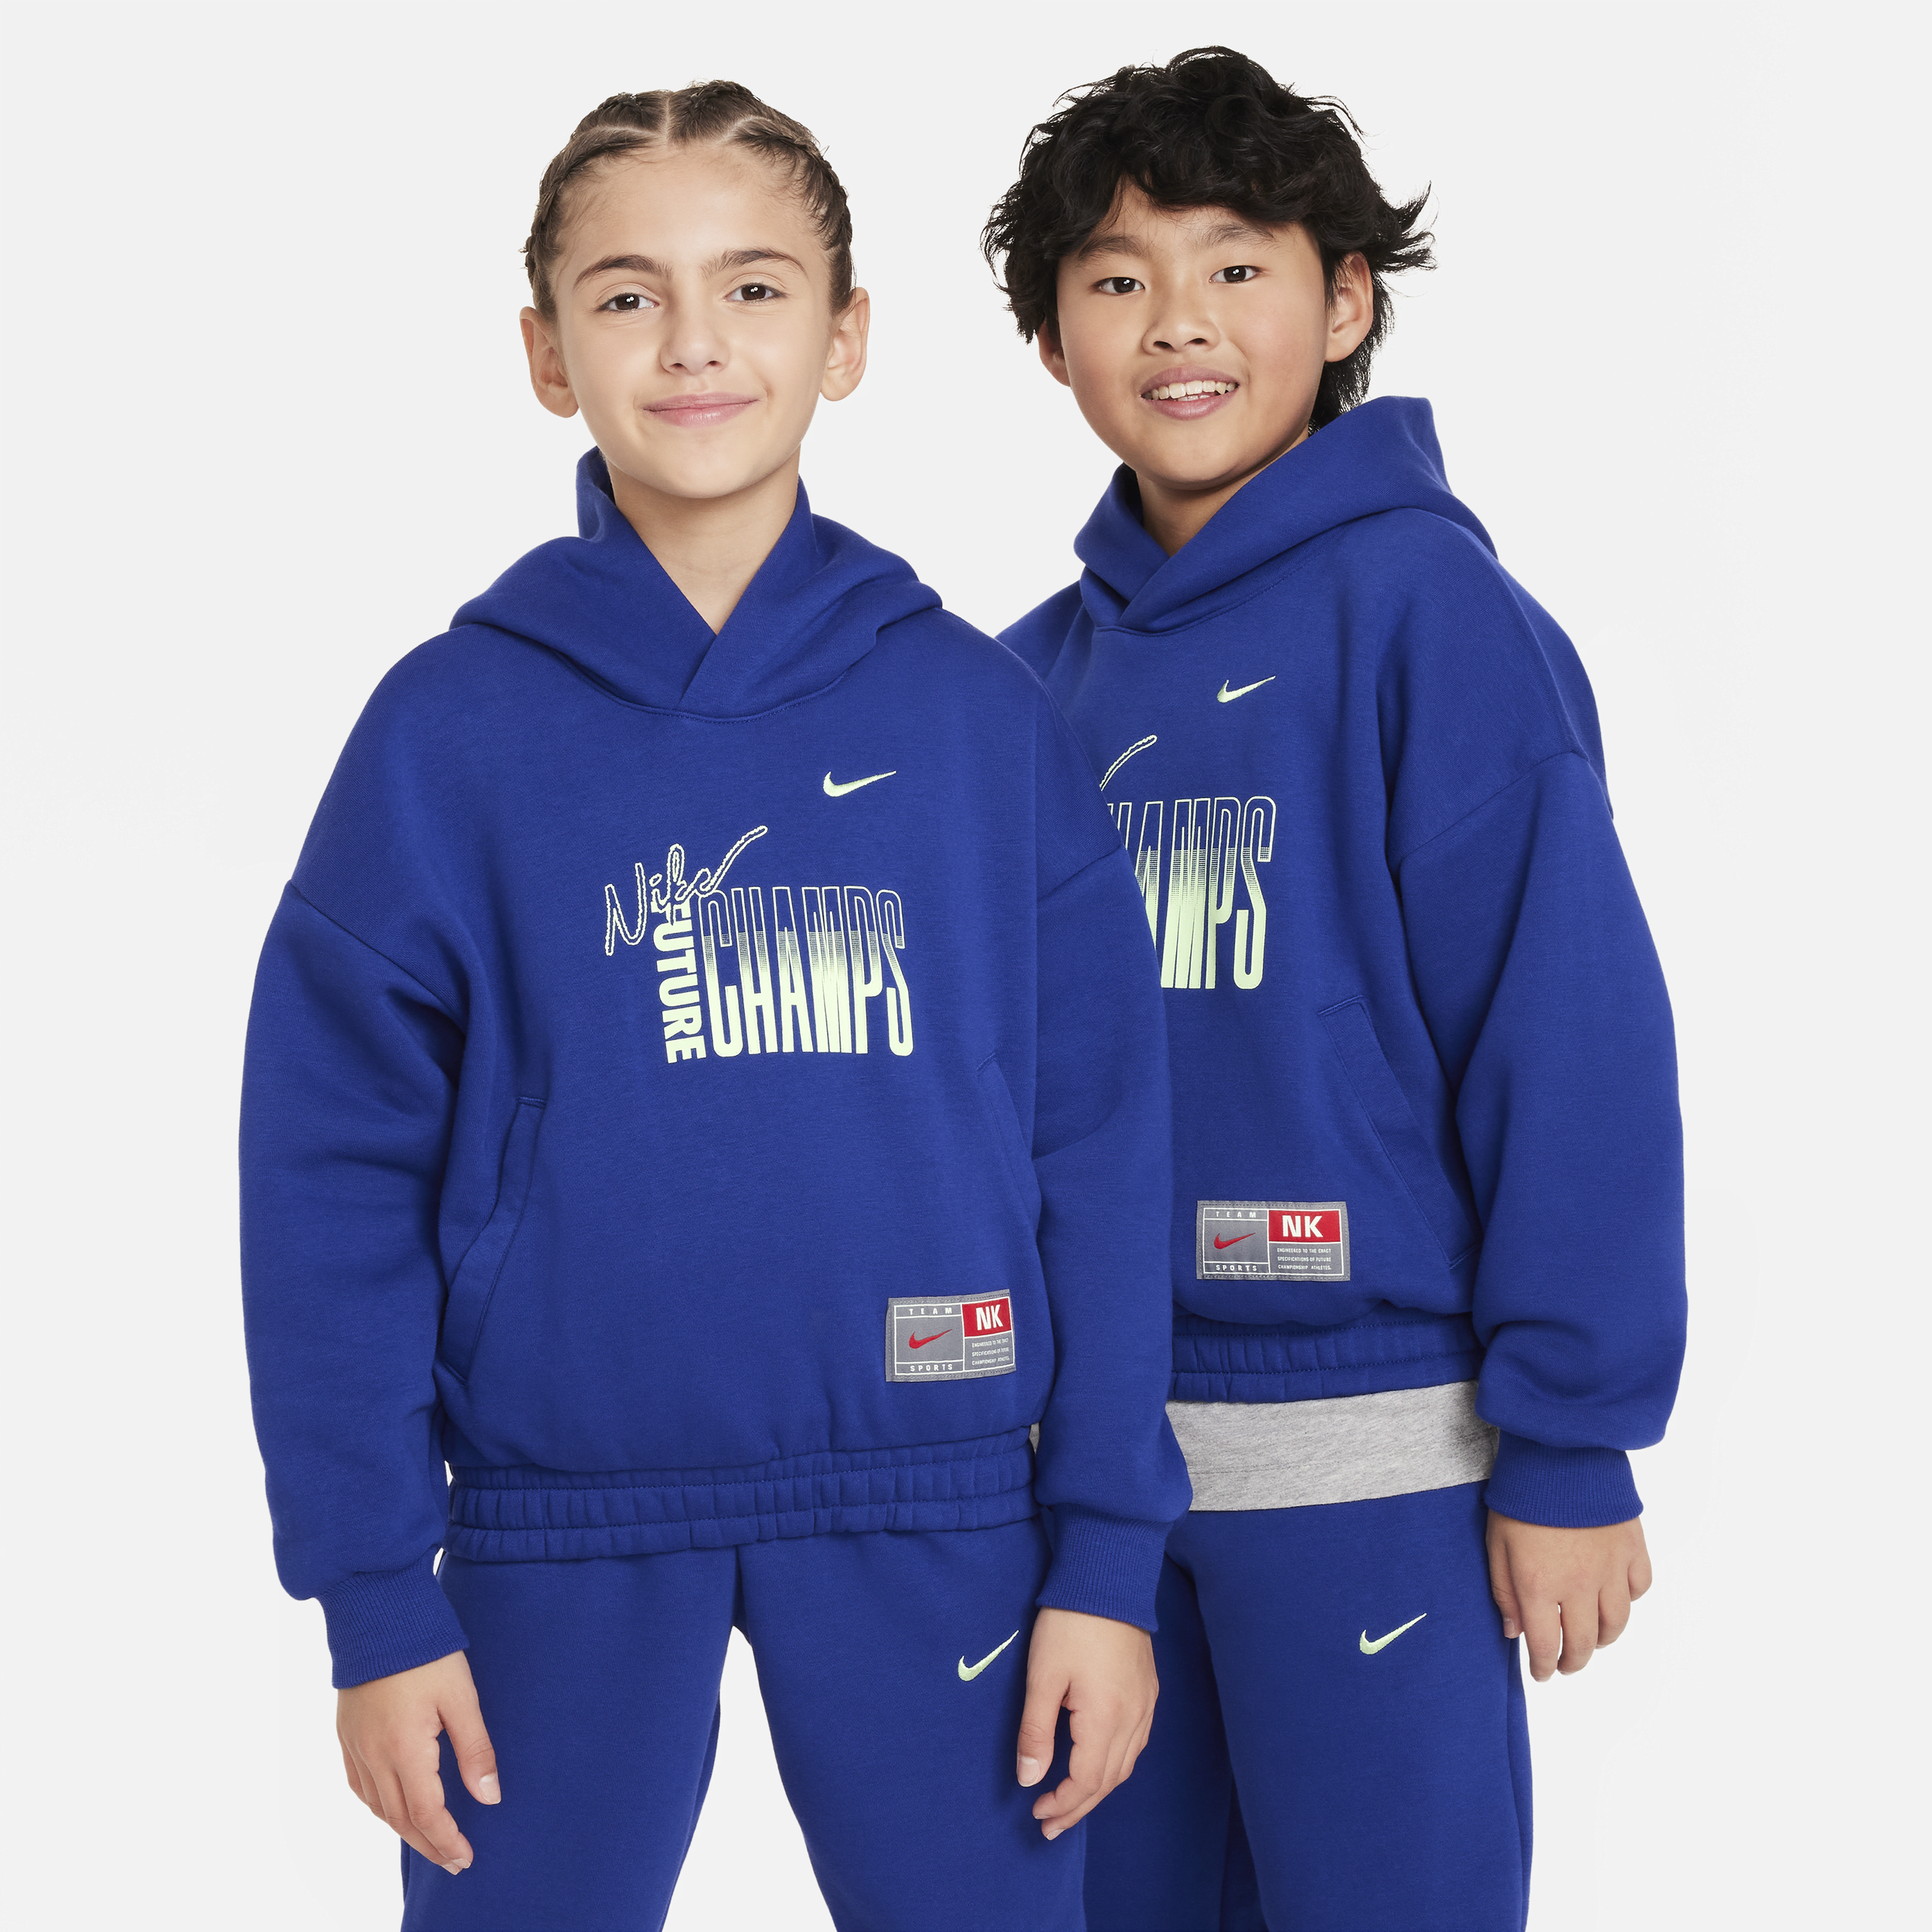 Nike Culture of Basketball fleecehoodie voor kids - Blauw